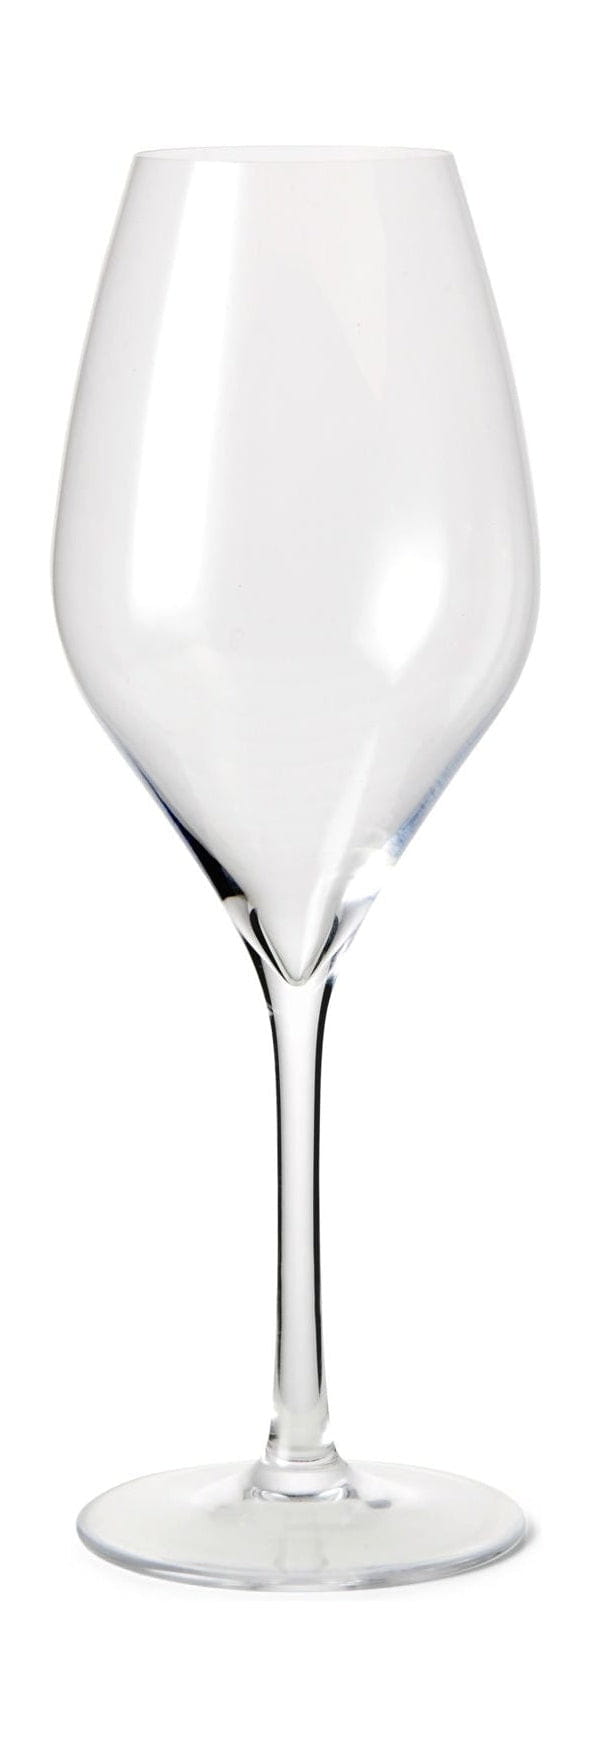 Rosendahl Premium champagneglasuppsättning av 2 370 ml, tydligt